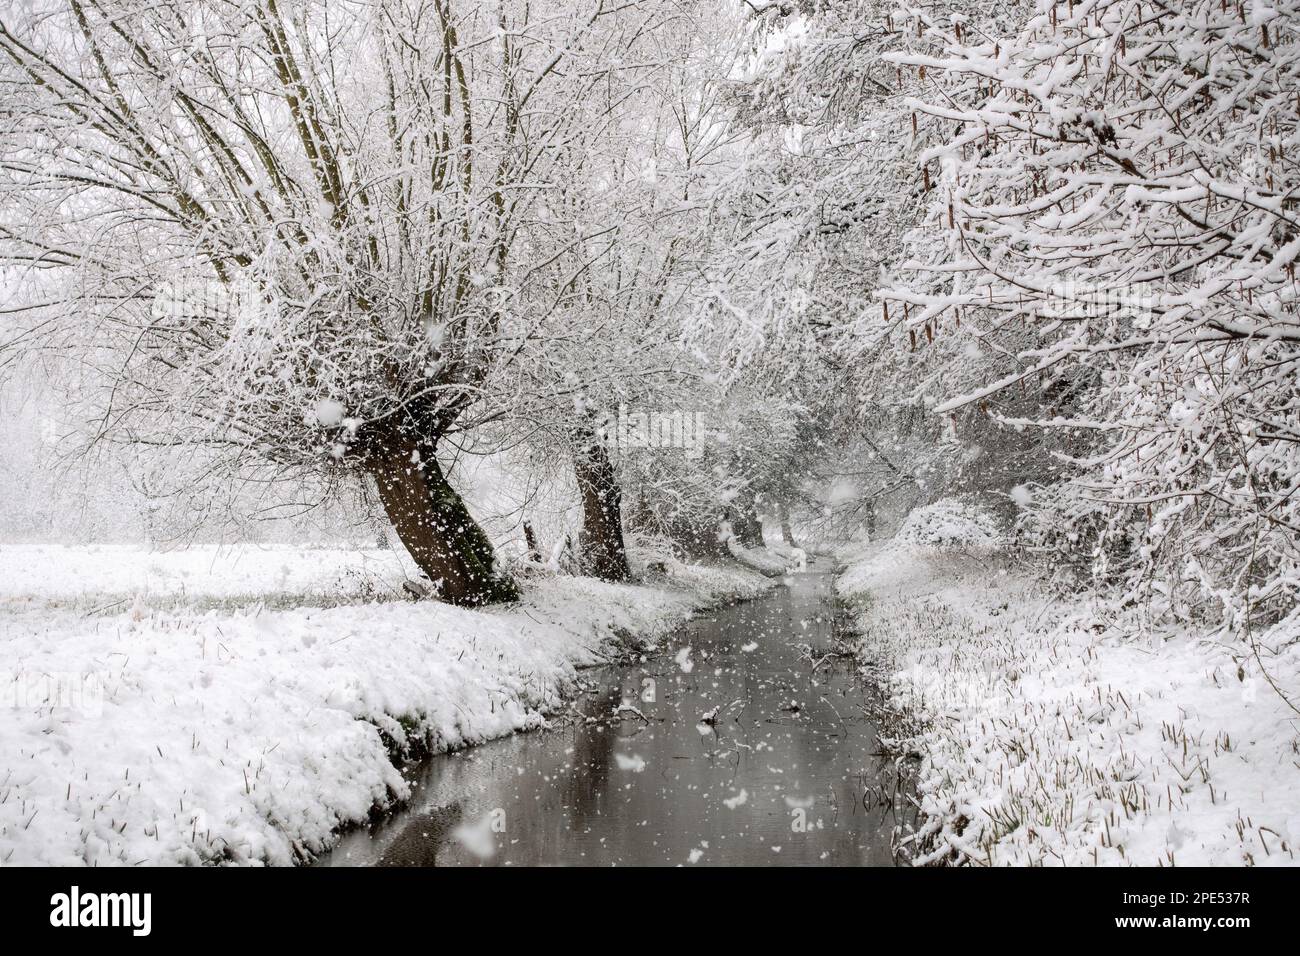 Début de l'hiver à Meerbusch, Rhénanie-du-Nord-Westfalia, Allemagne. Fortes chutes de neige dans une réserve naturelle, Ilvericher Altrheinschlinge près de Düsseldorf. Banque D'Images